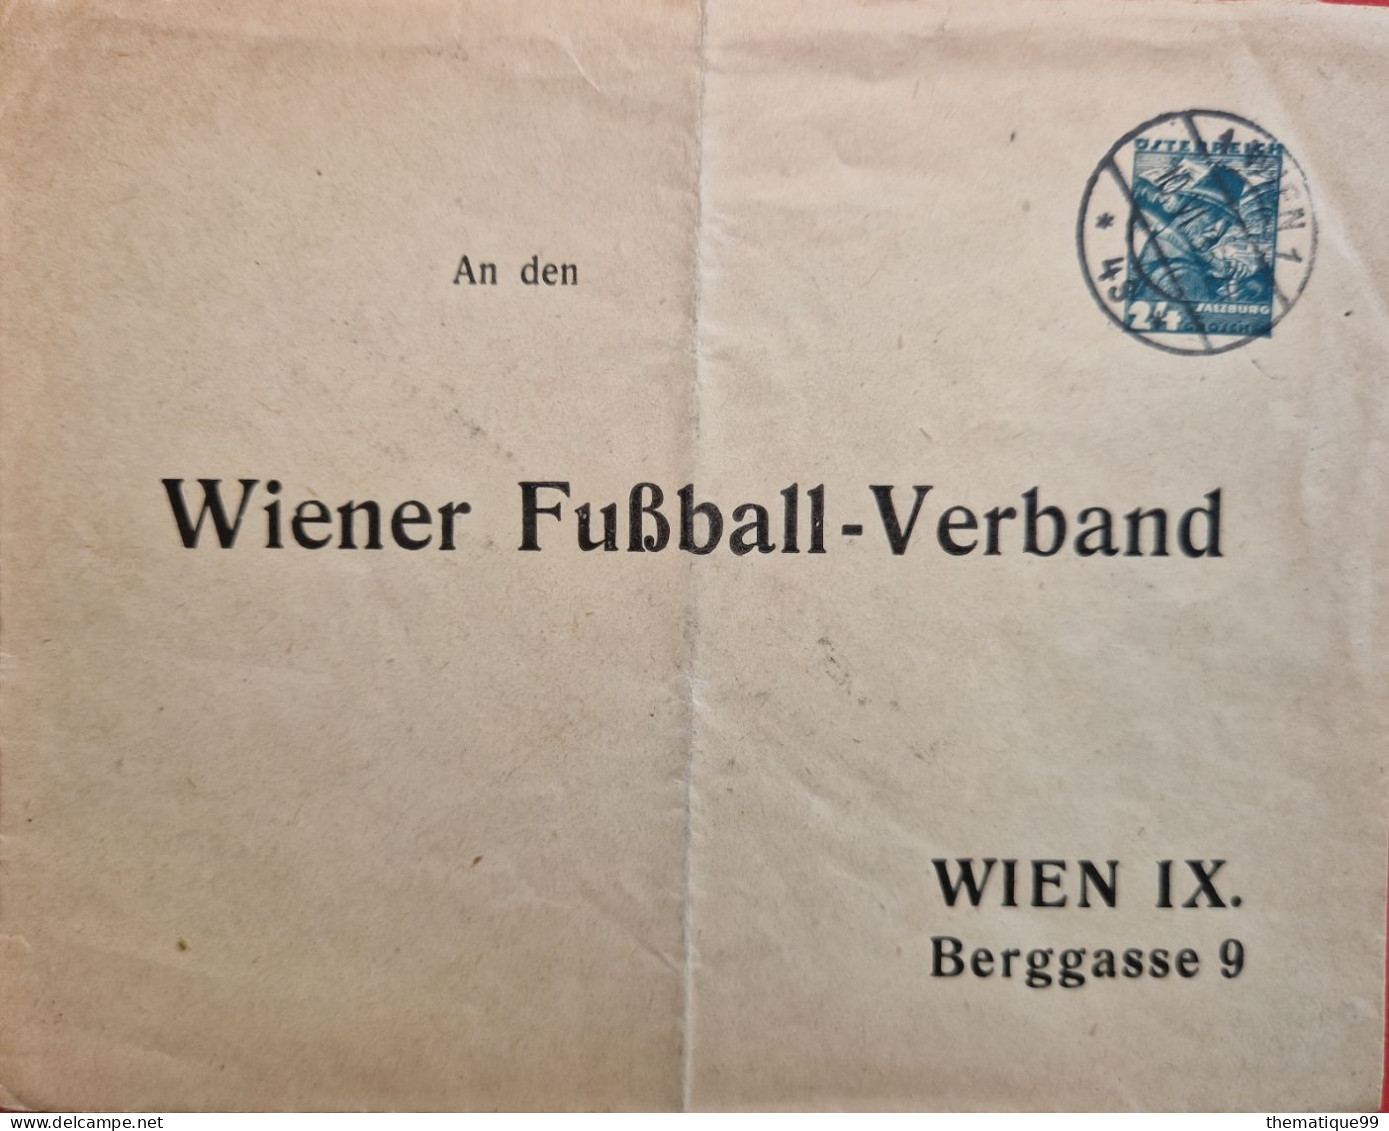 Entier Postal D'Autriche Timbré Sur Commande (1932) : Football - Briefe U. Dokumente